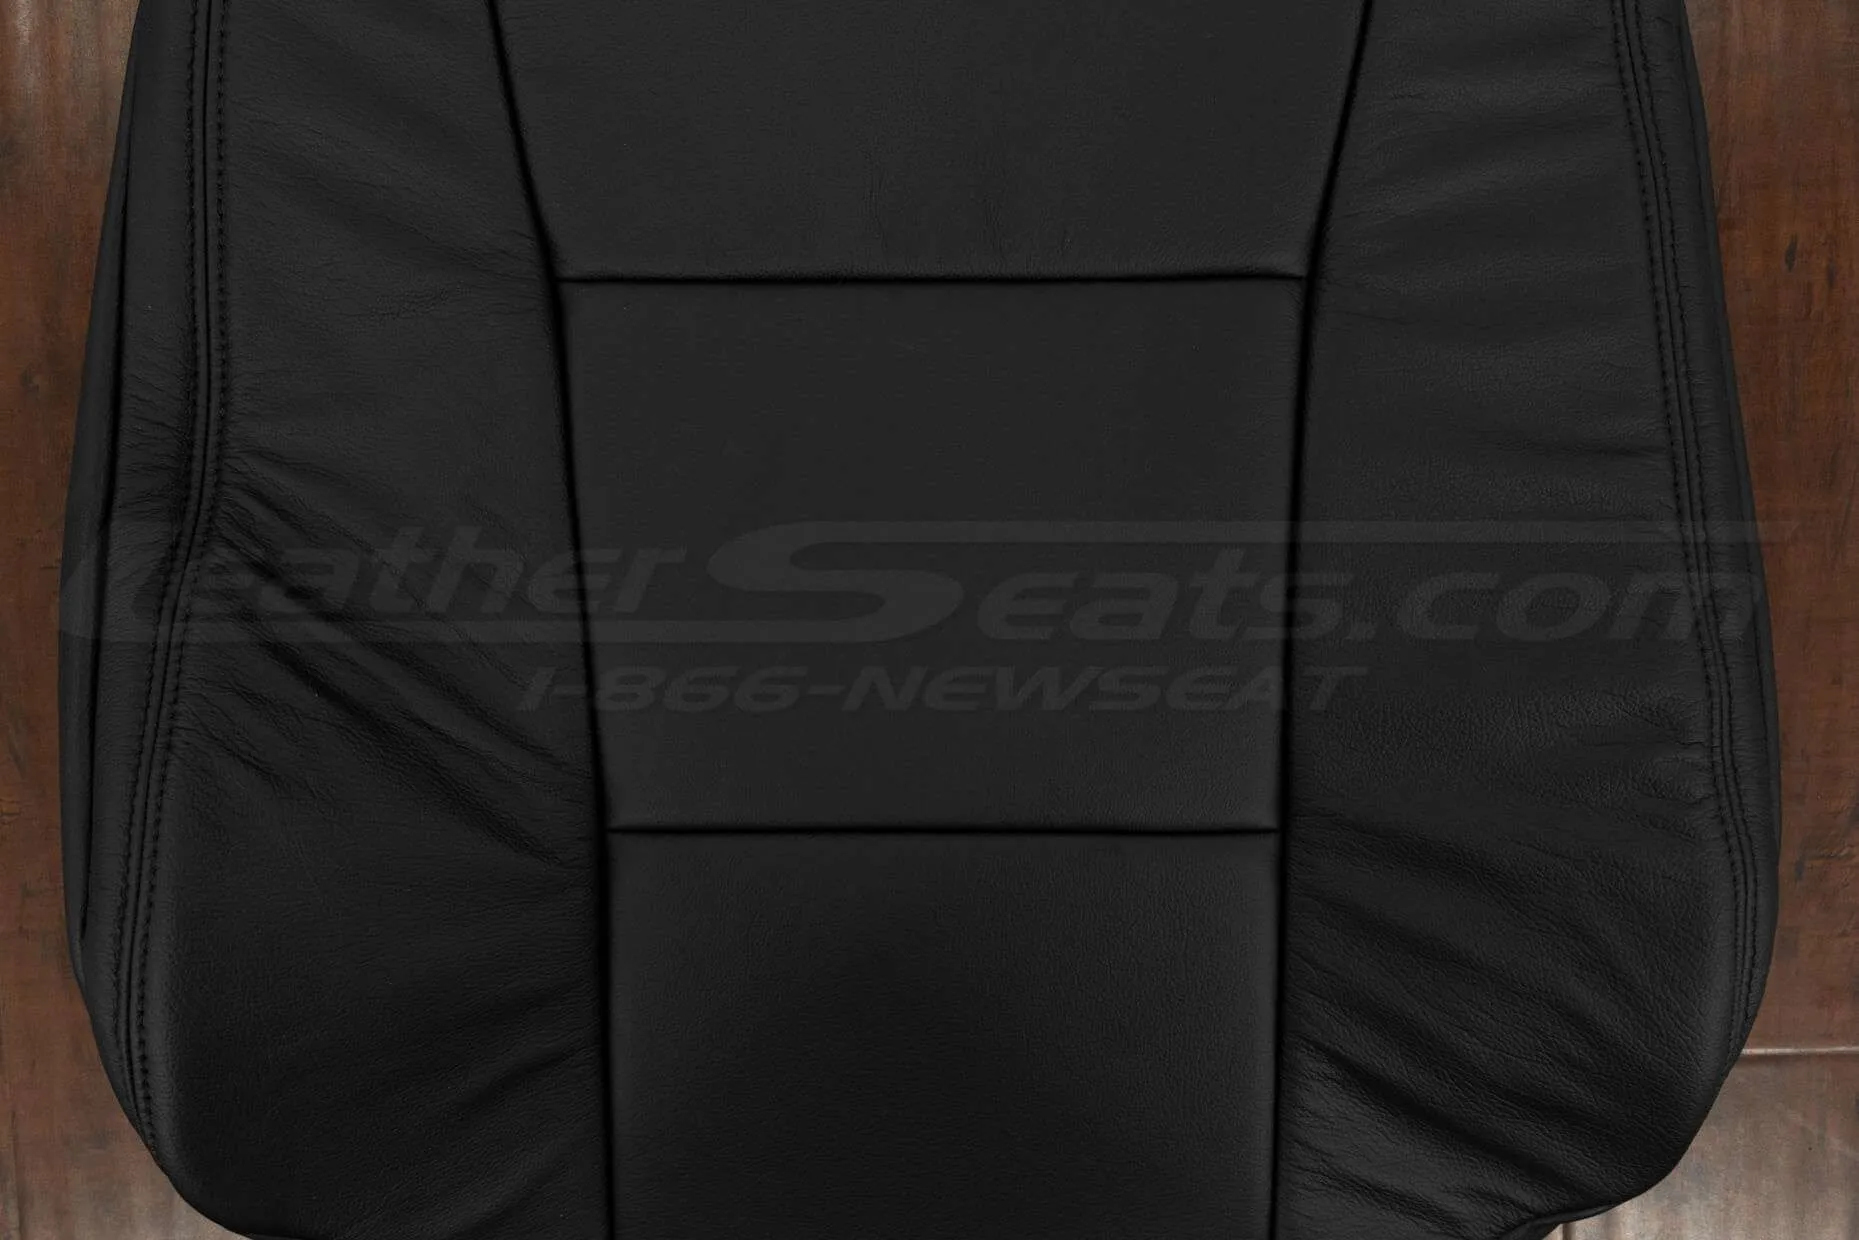 Black backrest insert